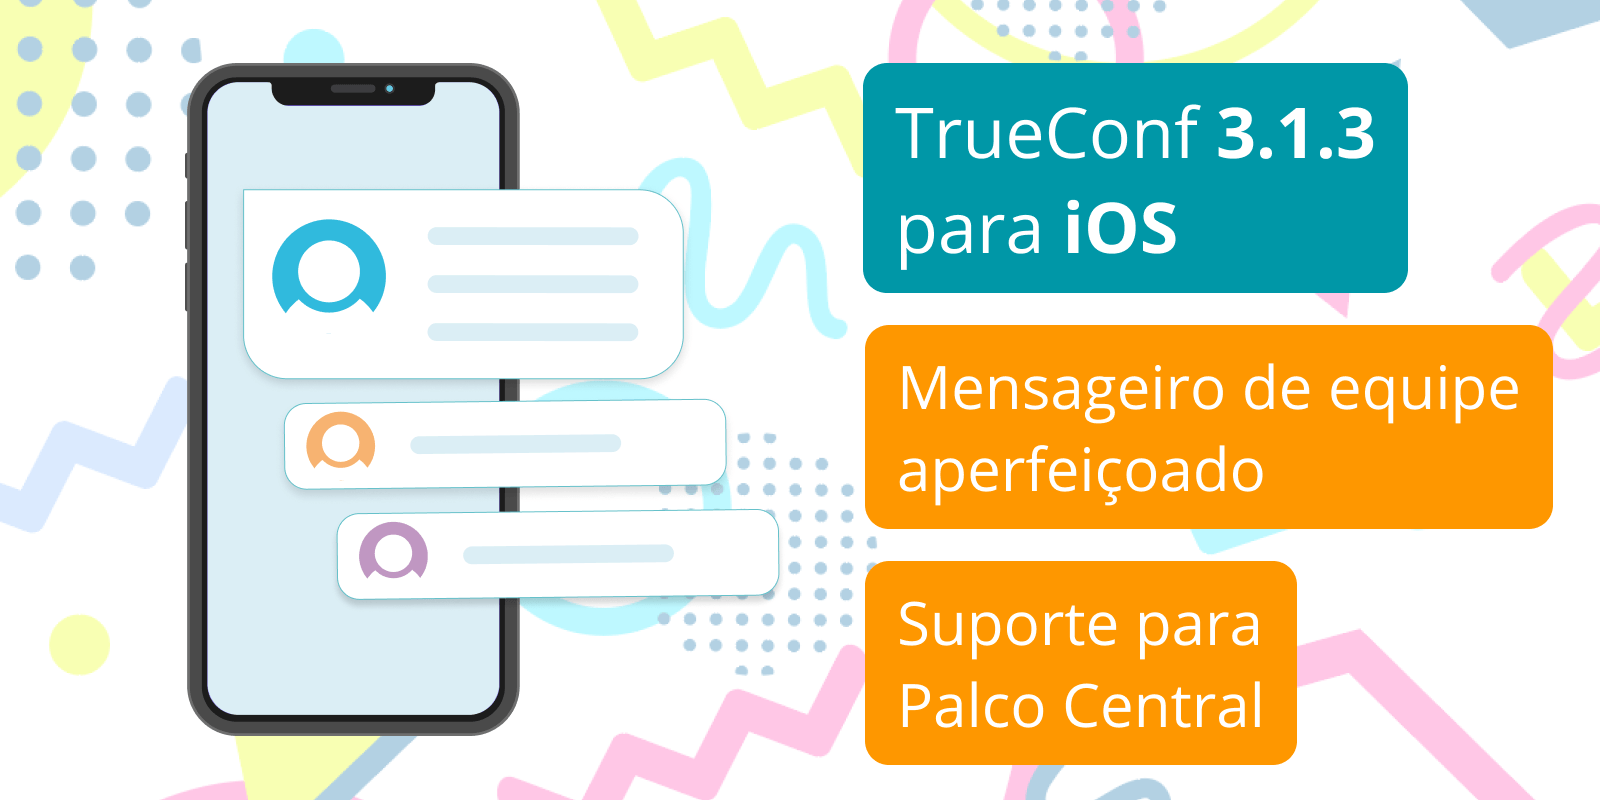 TrueConf 3.1.3 para iOS: mensagens de equipe aprimoradas e suporte de Palco Central 4